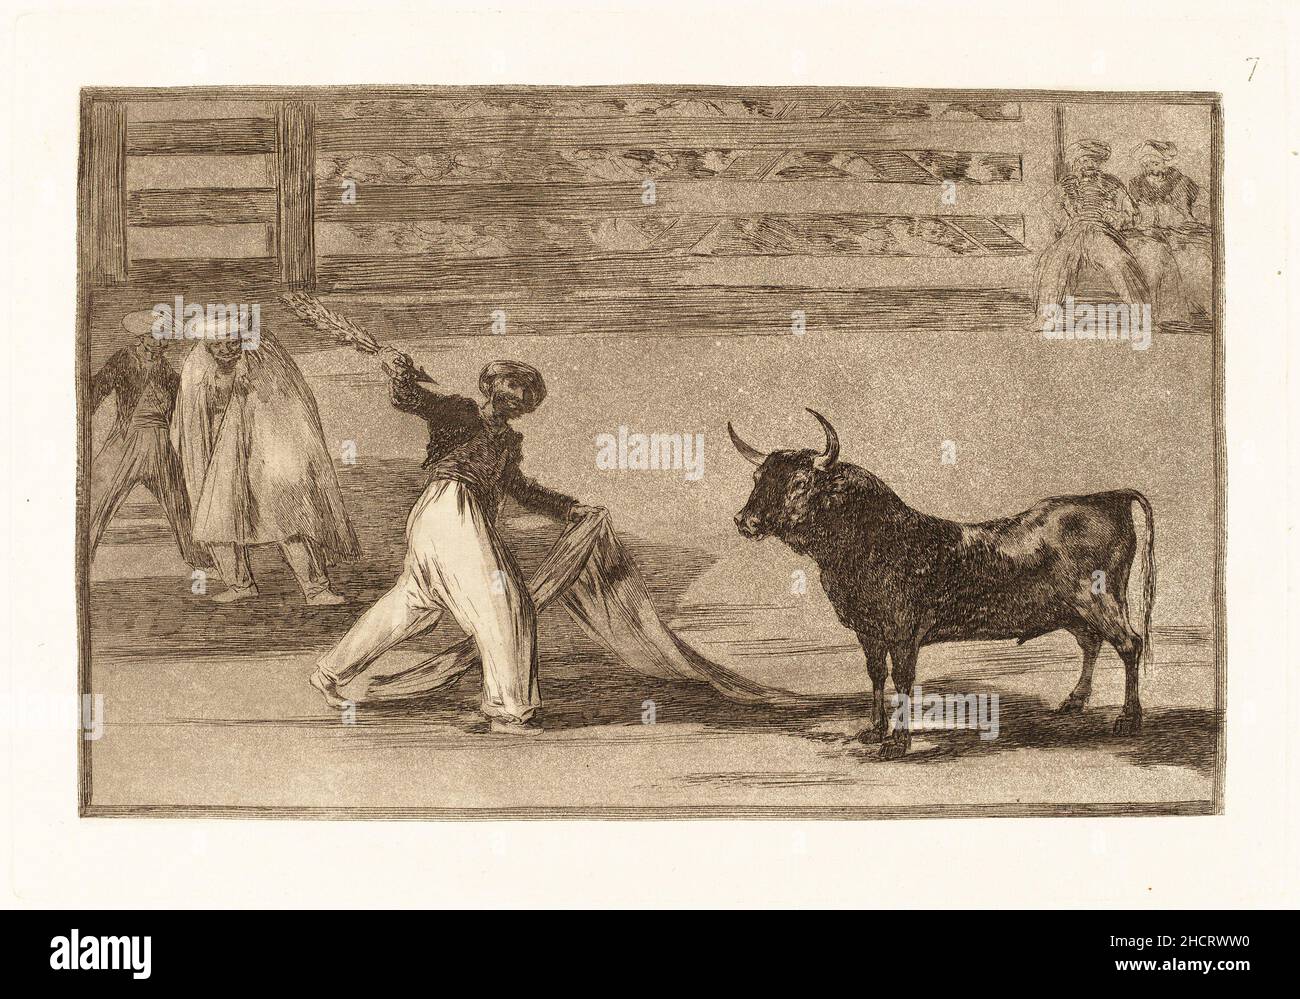 Francisco de Goya, Origen de los arpones o banderillas (origine des harpons ou des Banderillas).Il s'agit de l'impression numéro 7 dans une série d'impression 33 sur la corrida. Banque D'Images